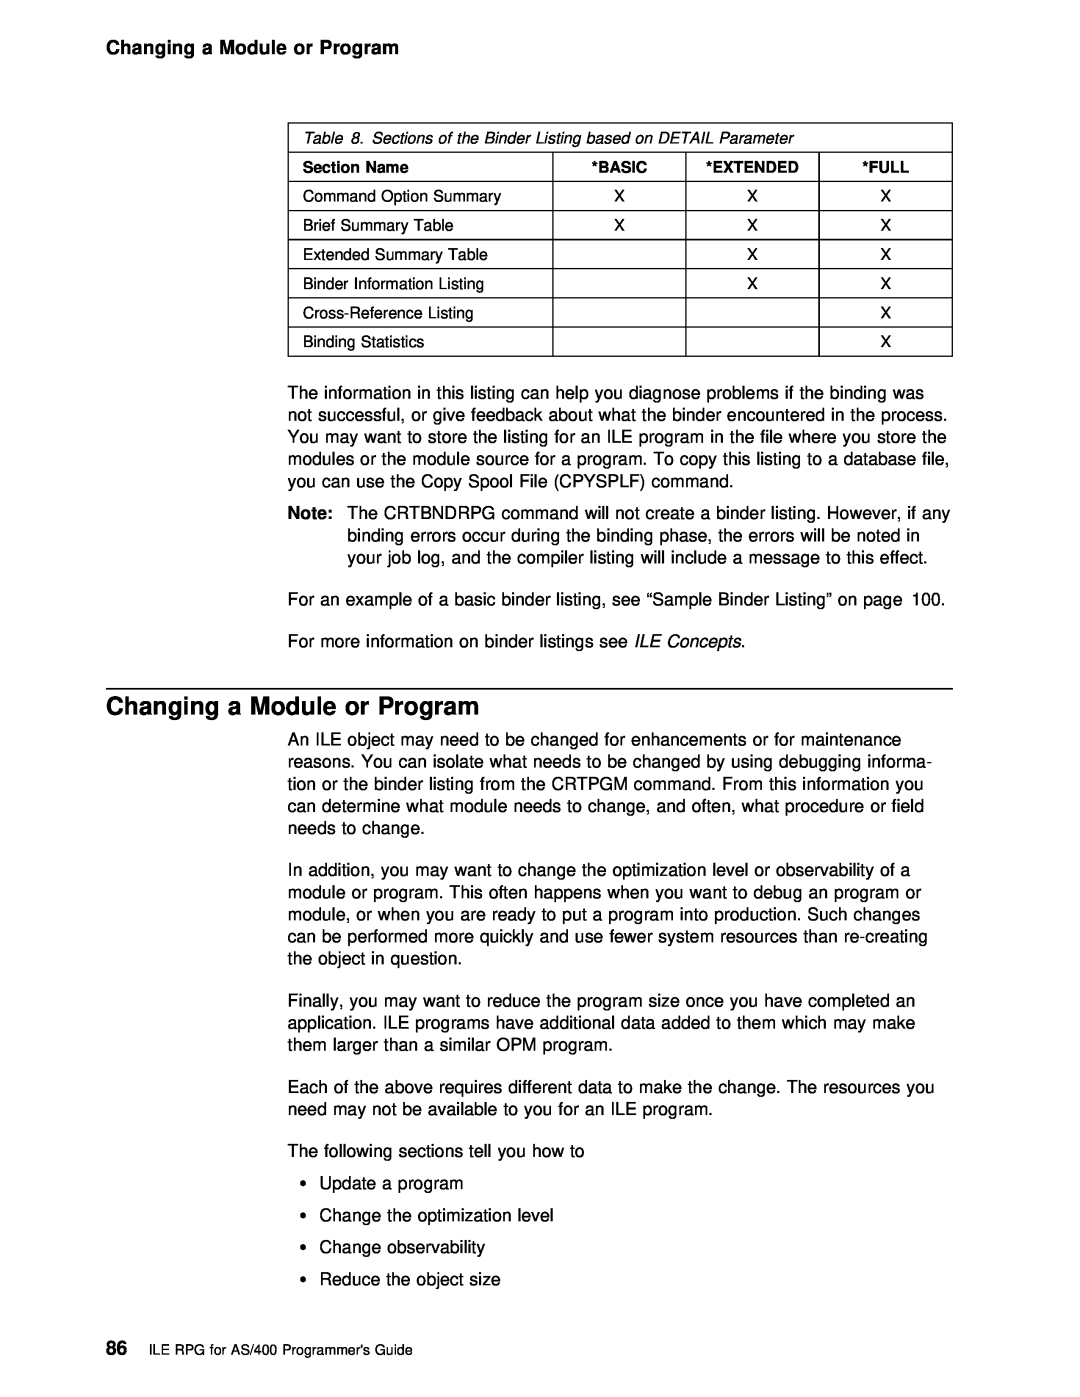 IBM AS/400 manual Changing a Module or Program, Basic, Full 